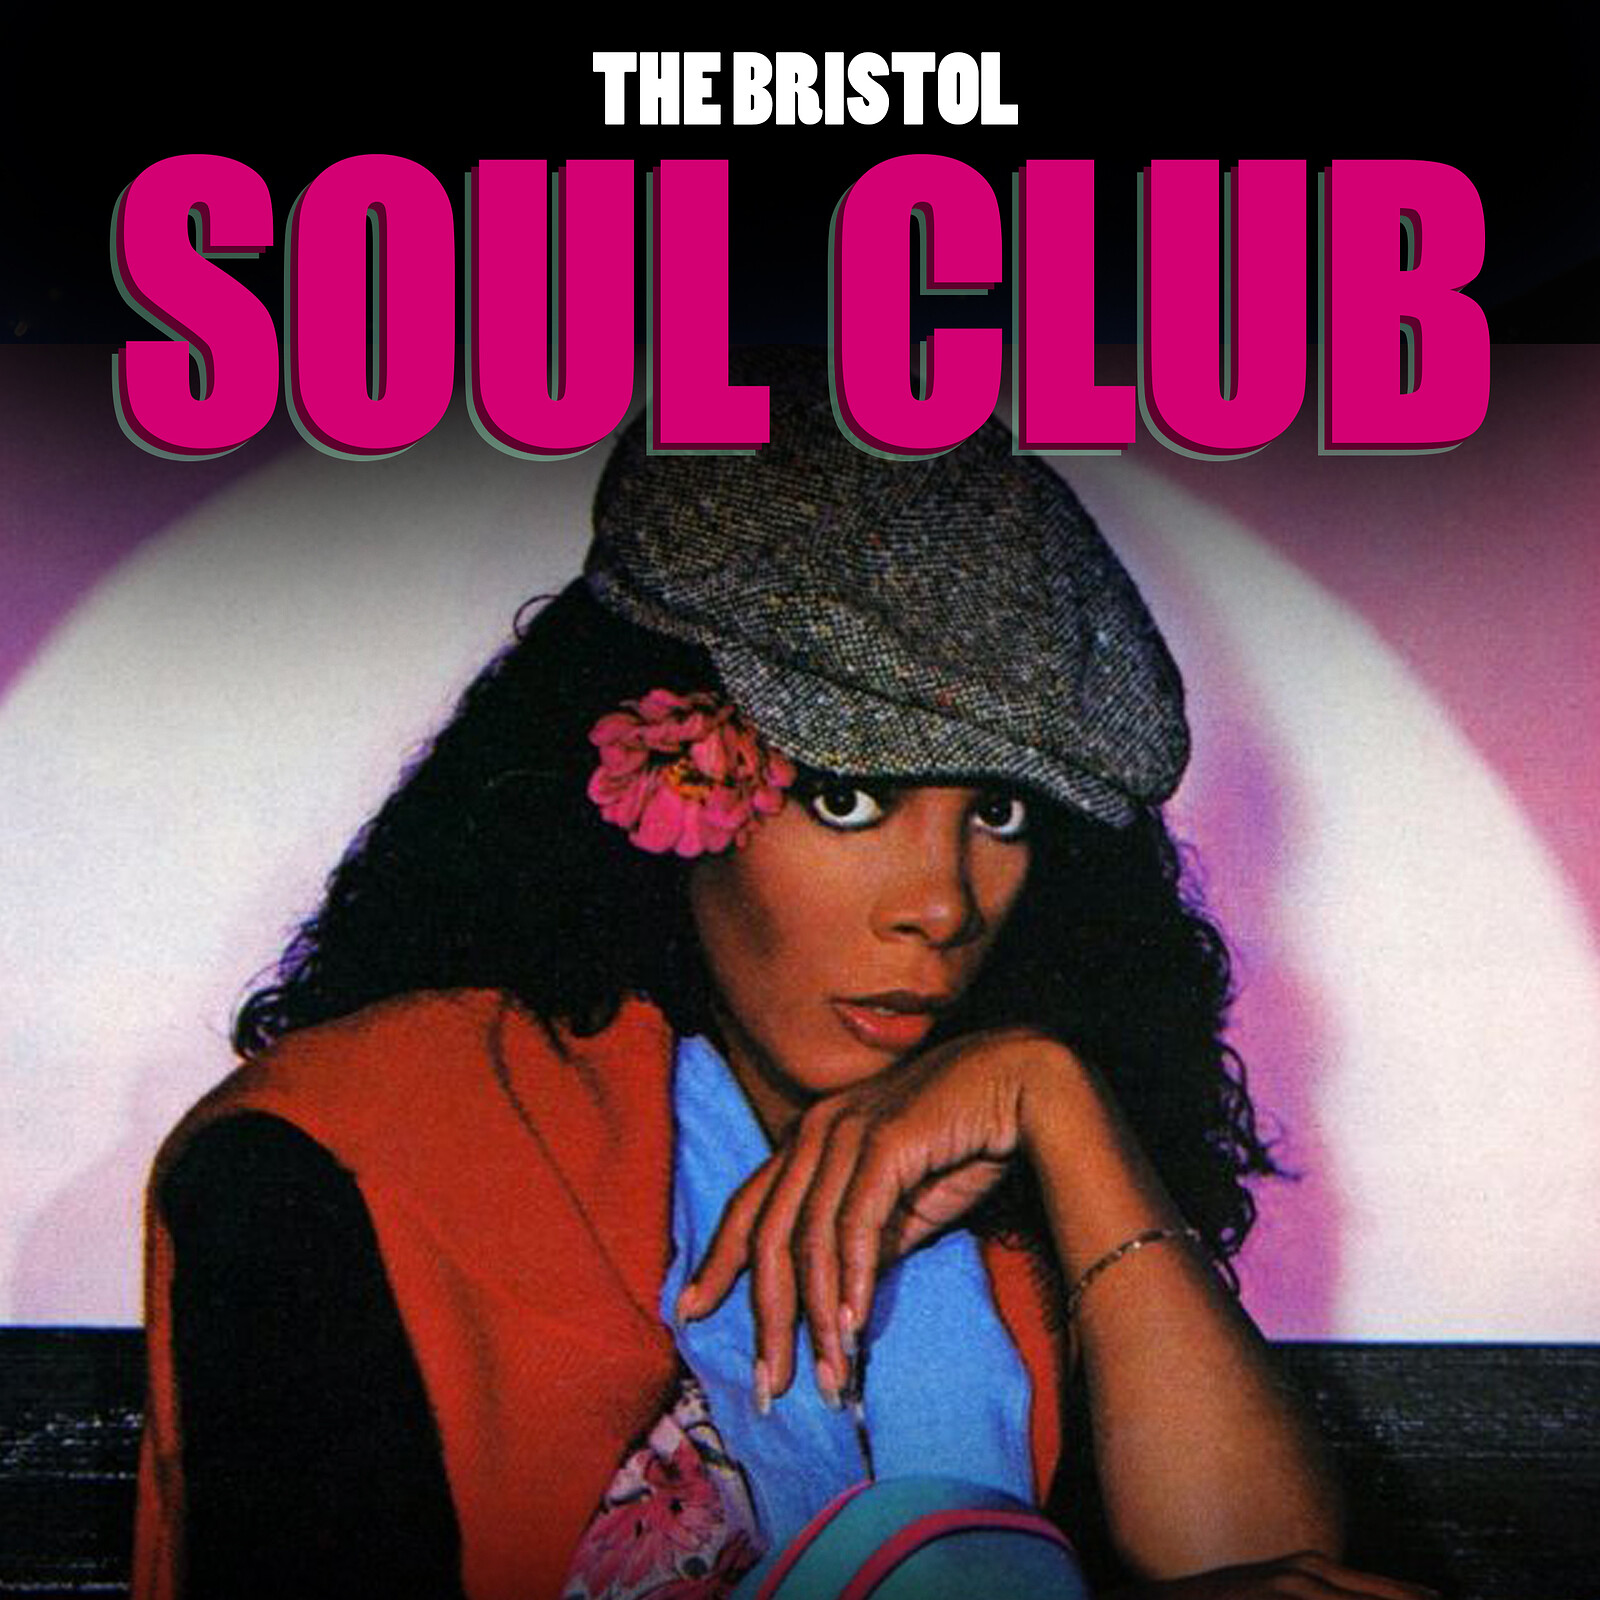 The Bristol Soul Club - Tickets OTD at Lost Horizon